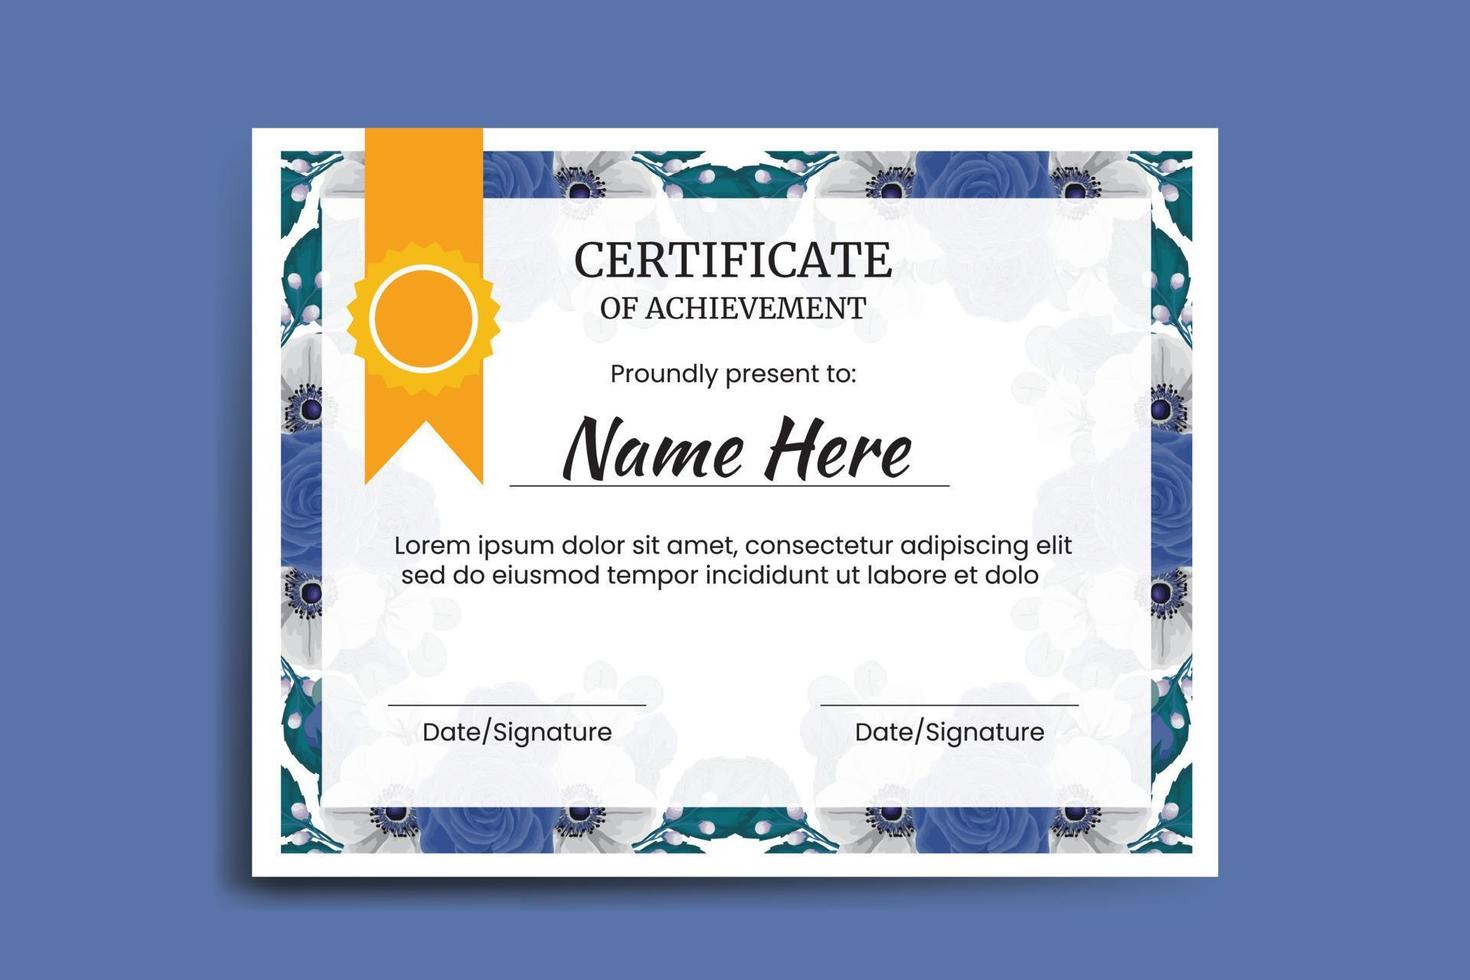 certificado modelo azul rosa flor aguarela digital mão desenhado vetor